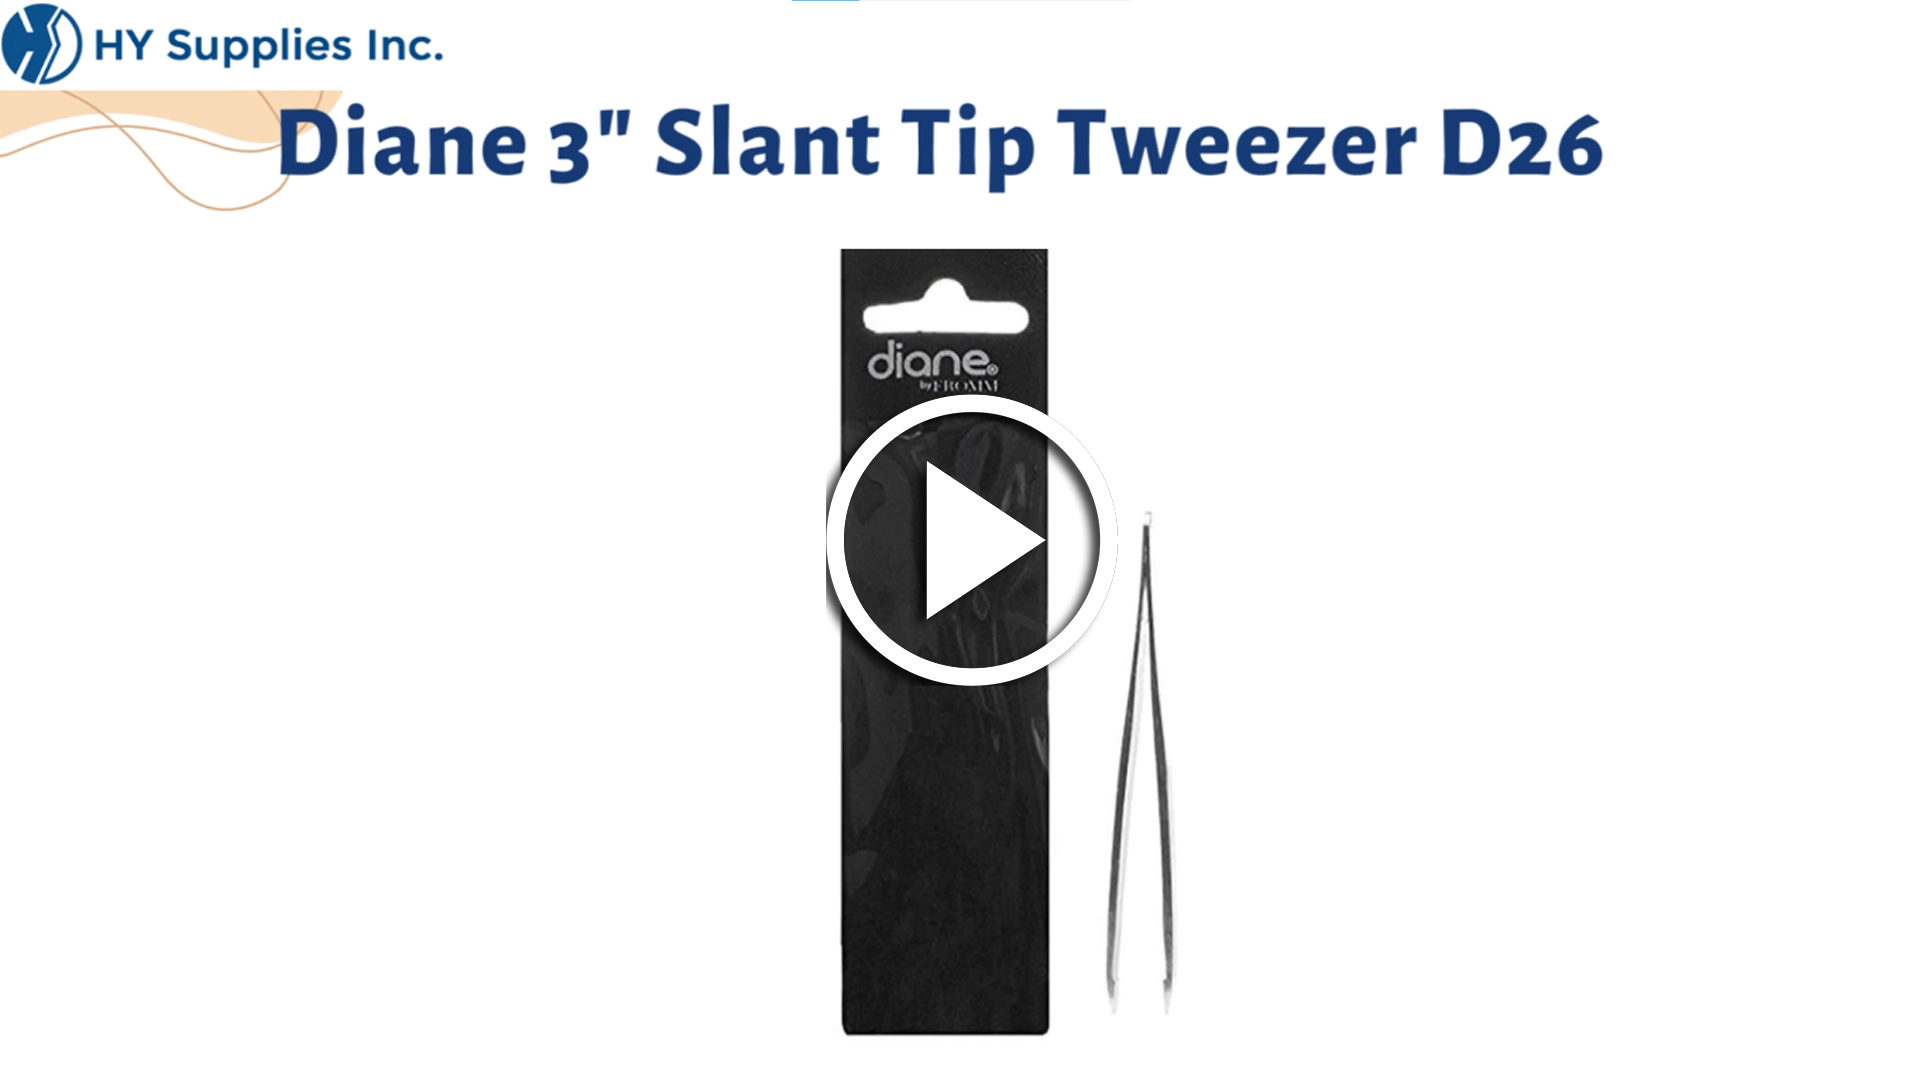 Diane 3"" Slant Tip Tweezer D26